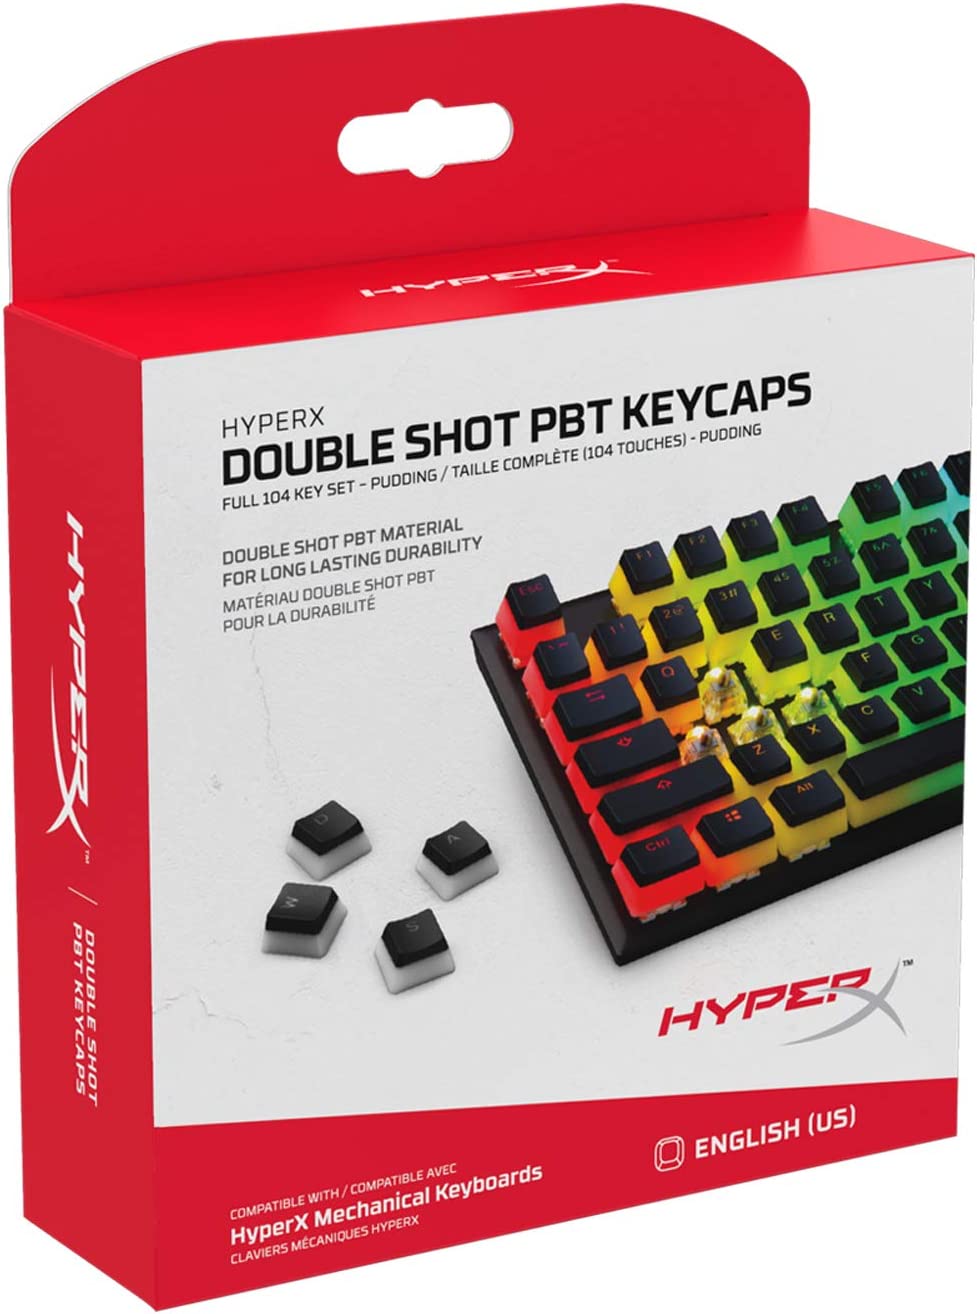 HyperX Pudding Keycaps Latam Español, Juego Completo de Cobertores para Teclas ABS Pudding Compatibles para Teclado Mecánico RGB HyperX , Perfíl OEM, Pudding Blanco y Negro